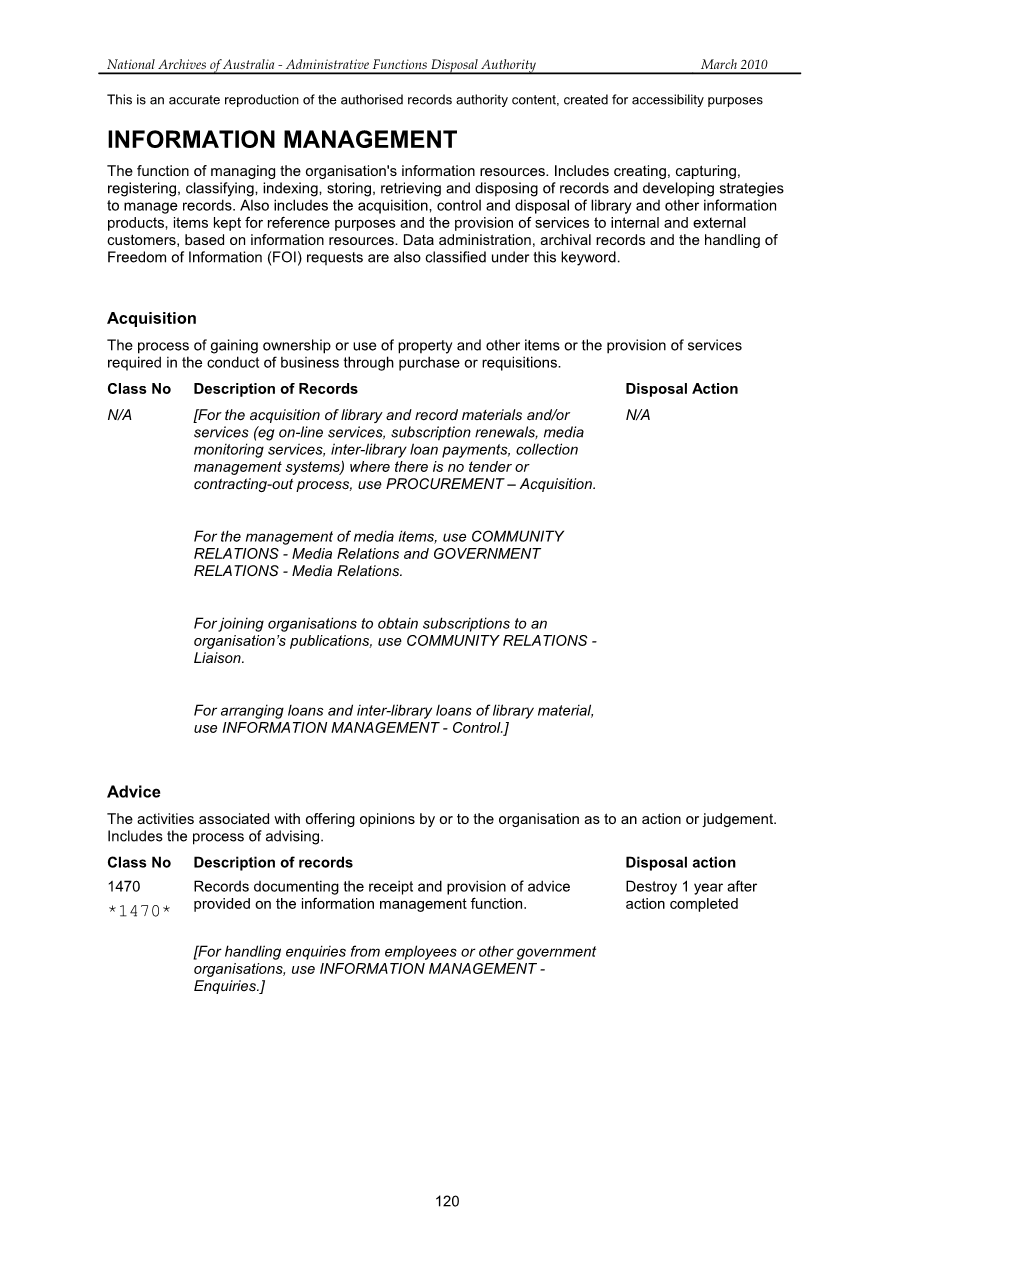 AFDA 2010 - Information Management